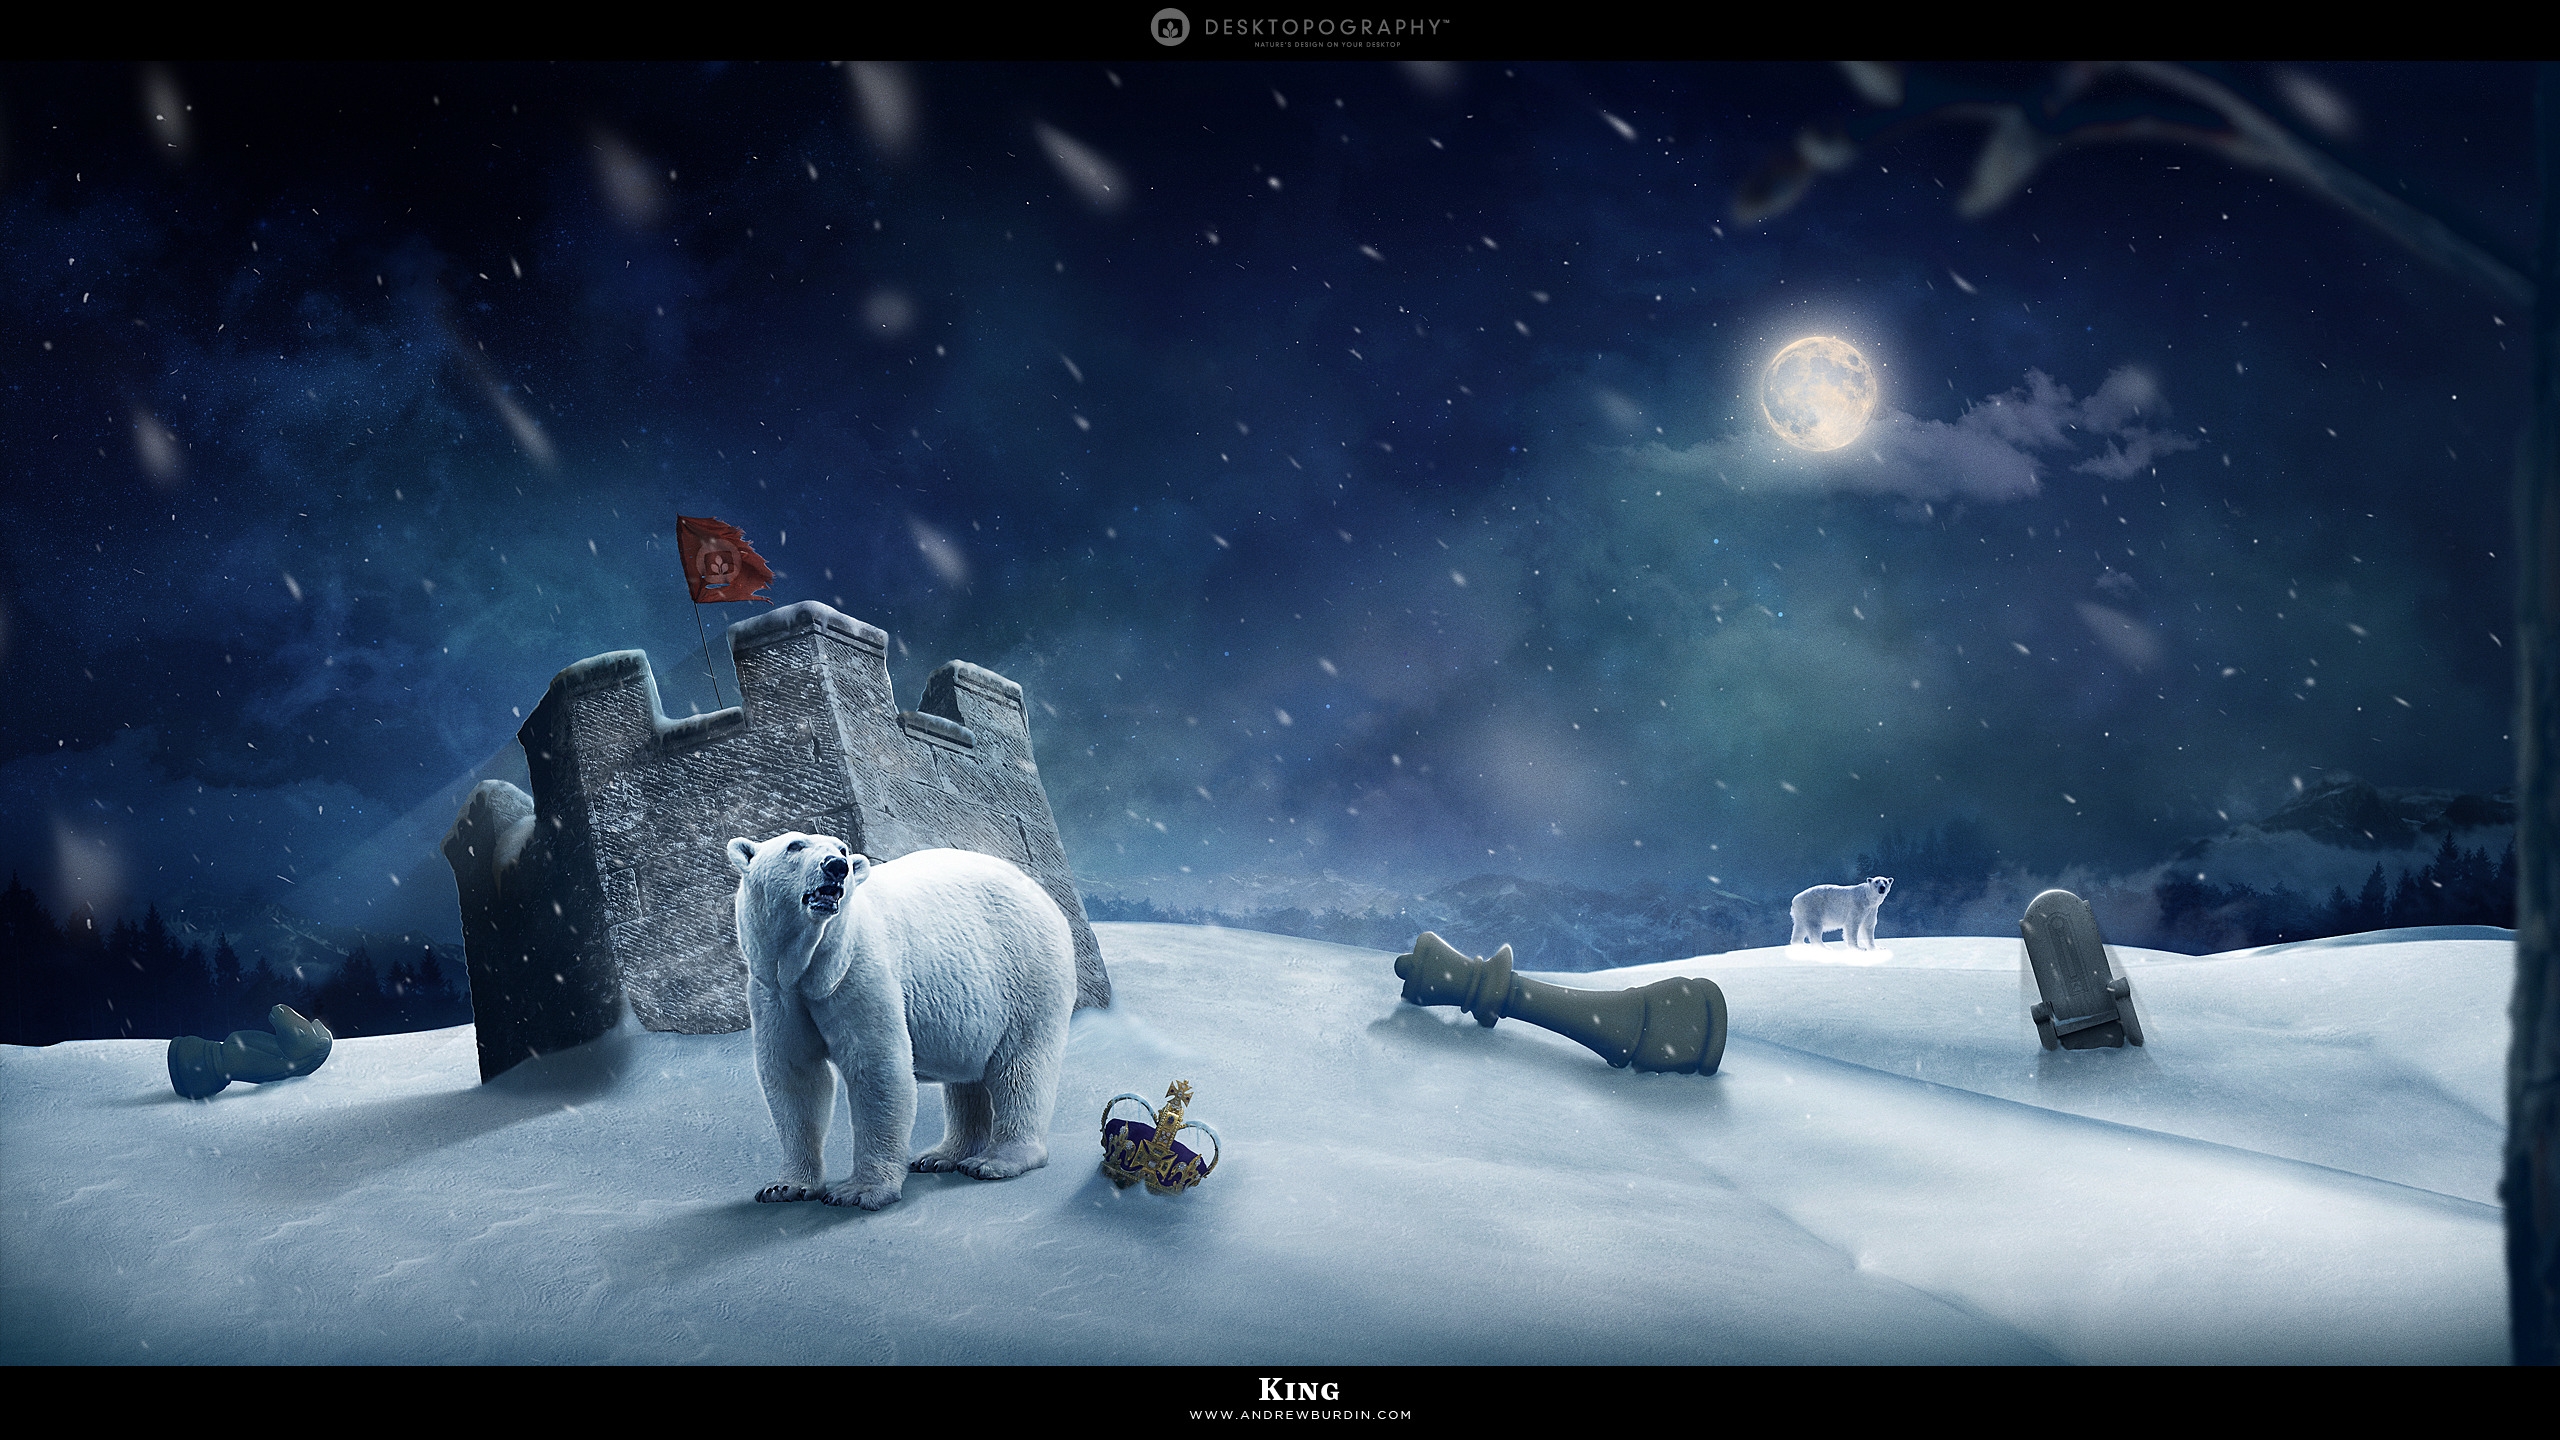 Polar king for 2560x1440 HDTV resolution